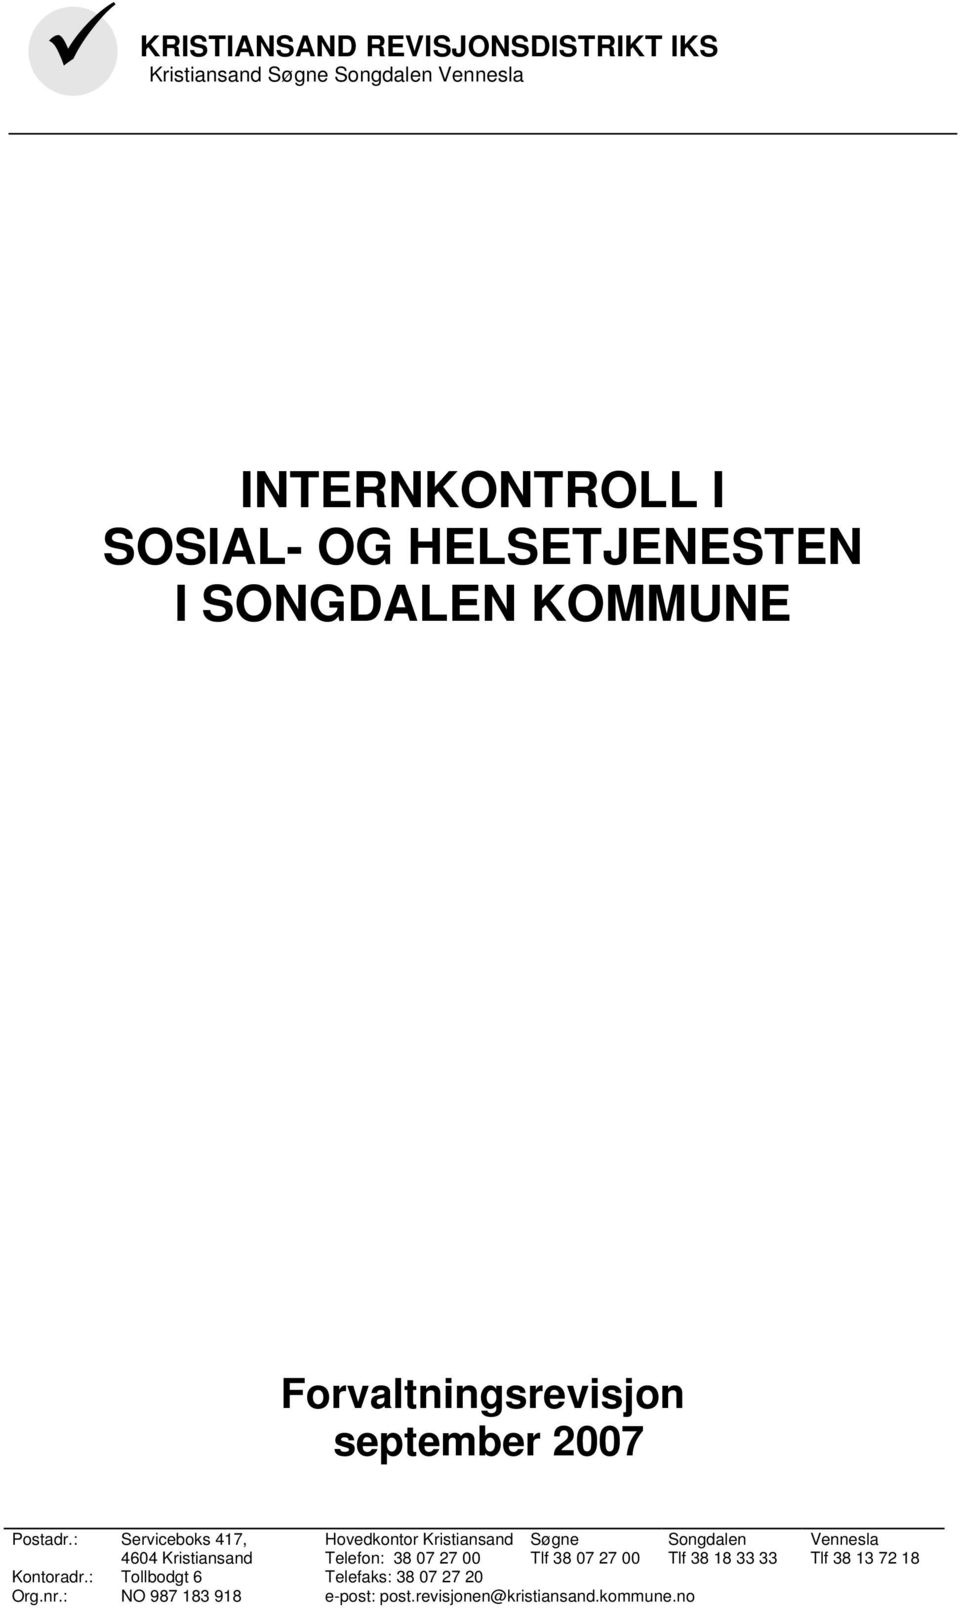 : Serviceboks 417, 4604 Kristiansand Hovedkontor Kristiansand Telefon: 38 07 27 00 Søgne Tlf 38 07 27 00